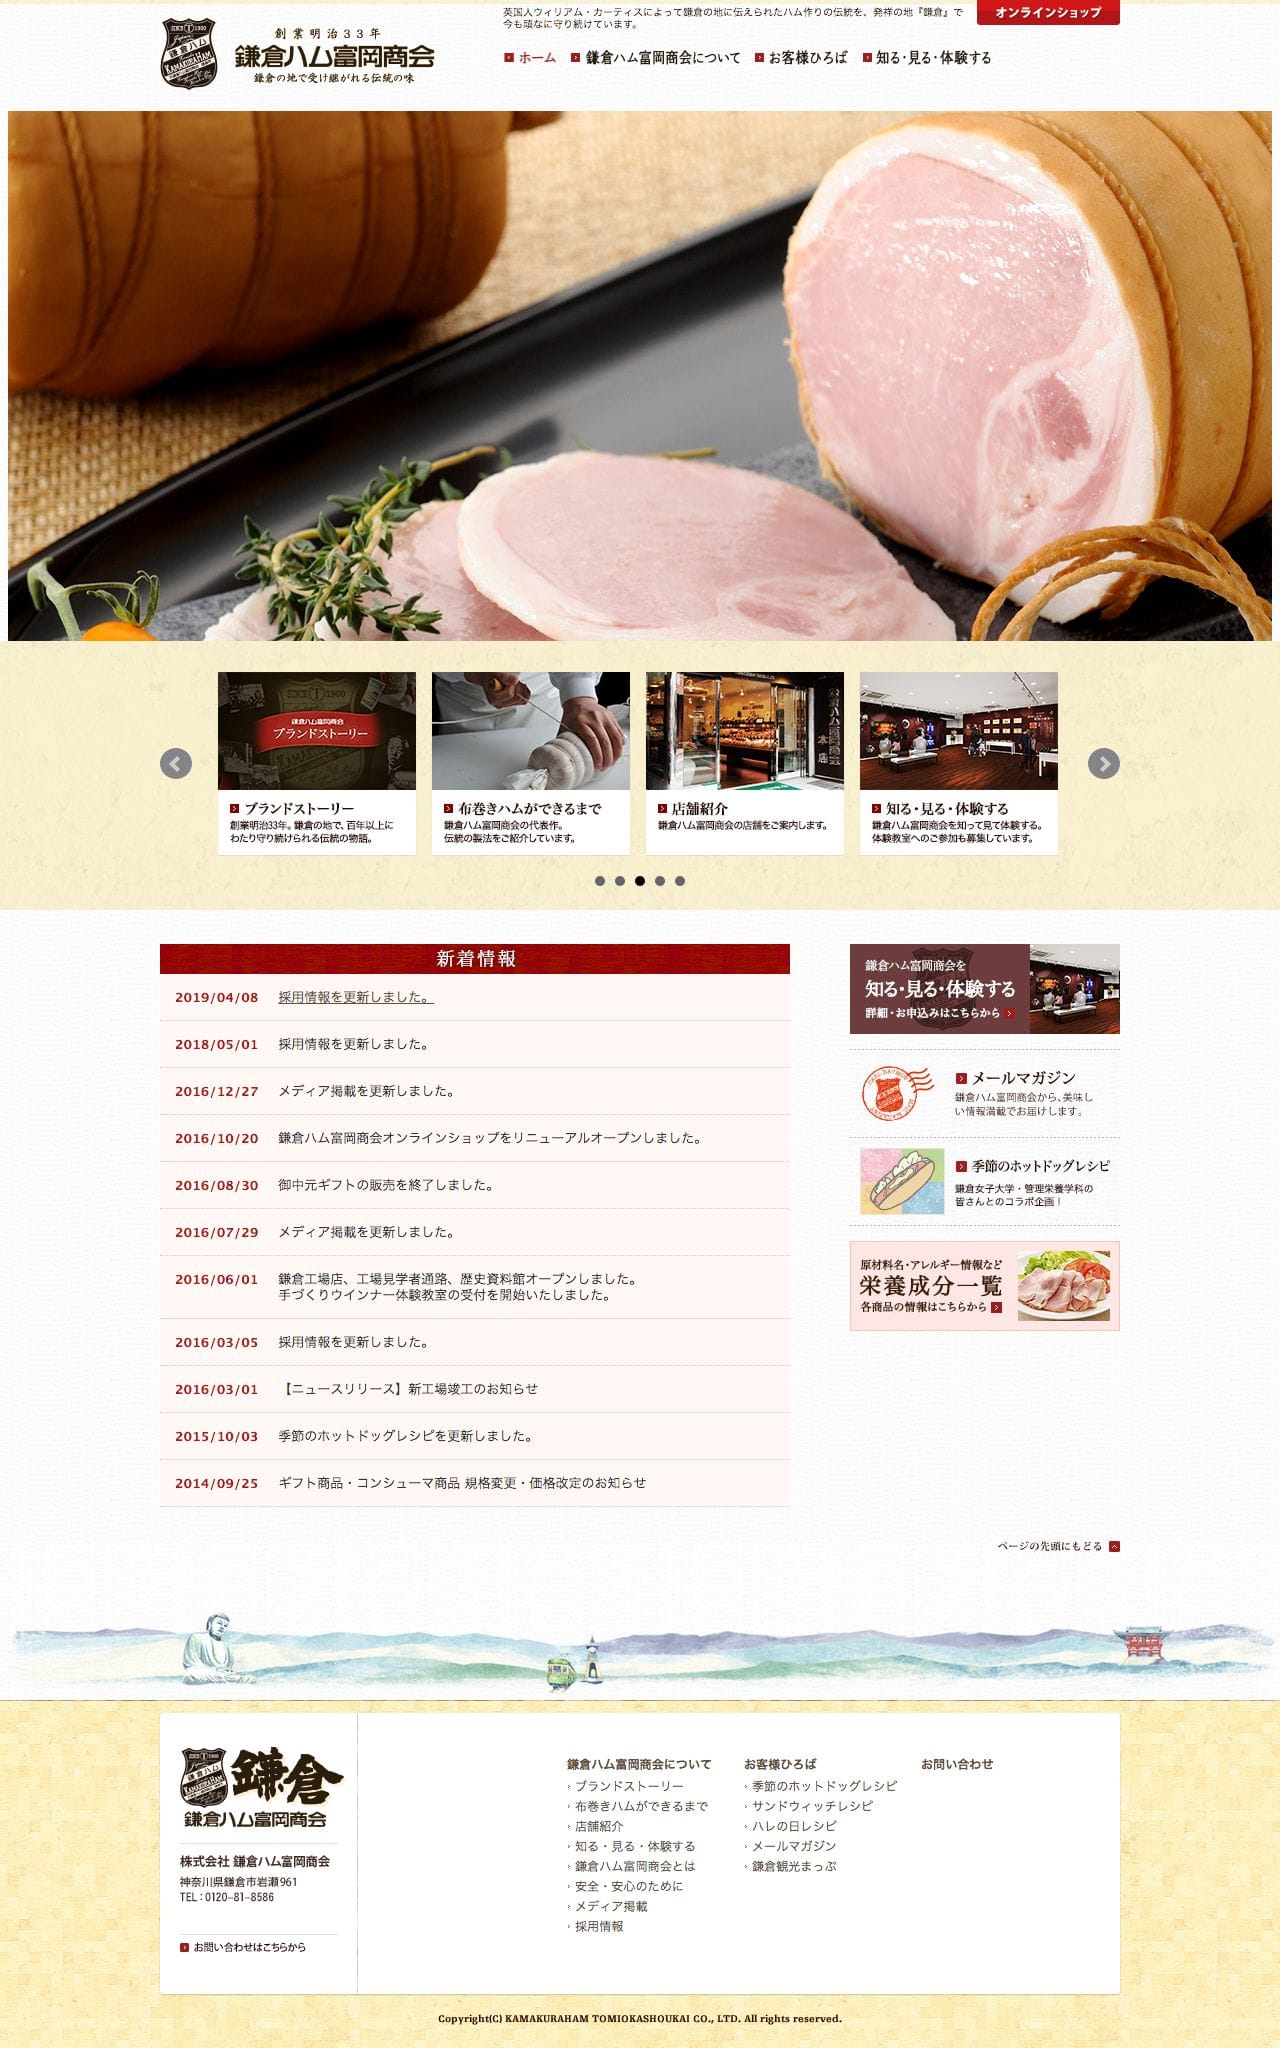 鎌倉ハム富岡商会 - 創業明治33年。鎌倉の地で受け継がれる伝統の味 -のスクリーンショット - トップページ